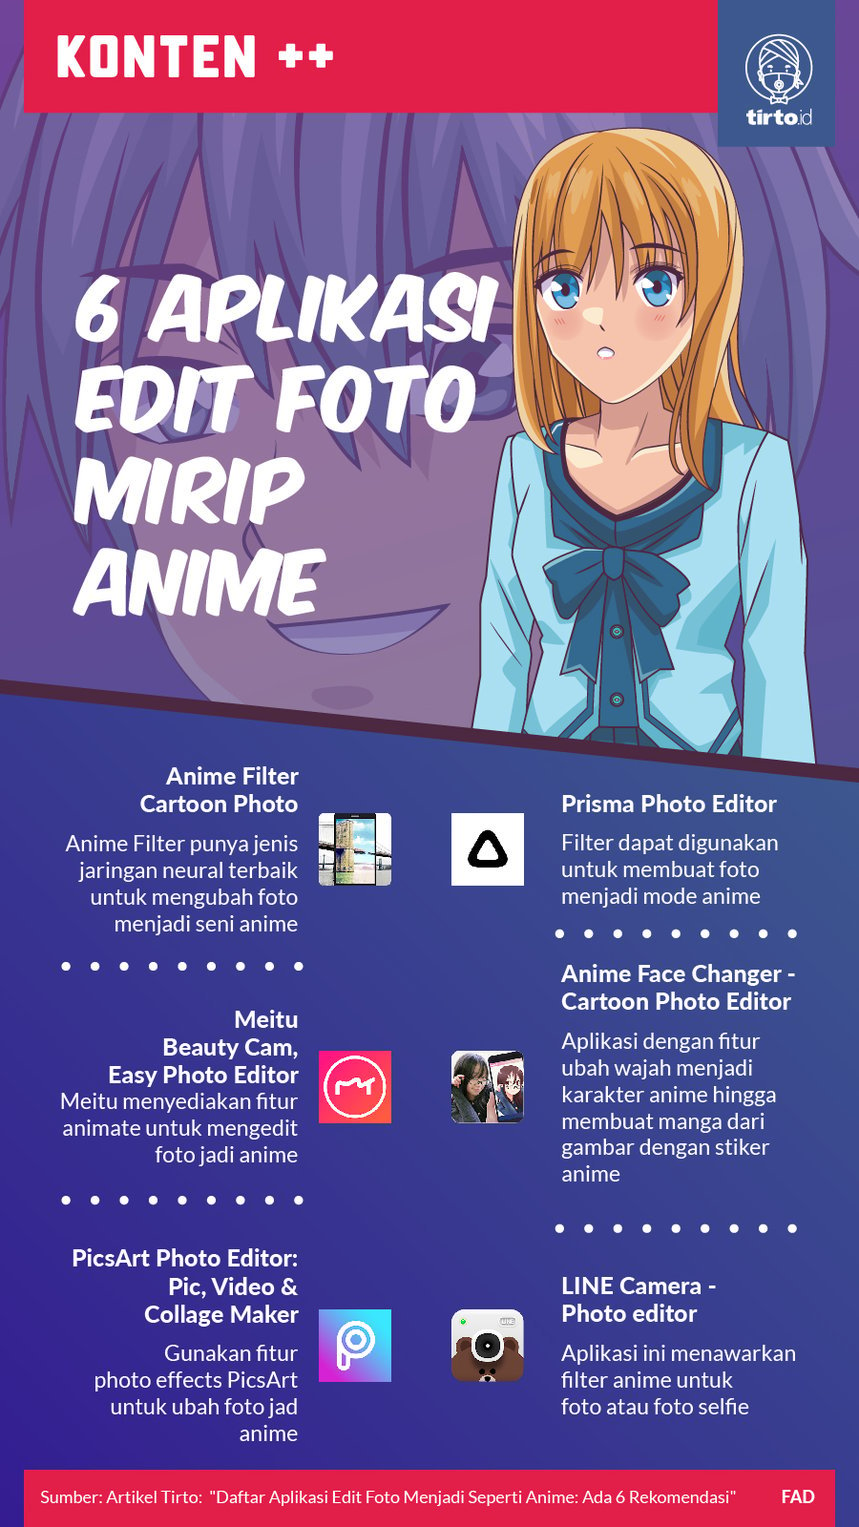 Daftar Aplikasi Edit Foto Menjadi Seperti Anime Ada 6 Rekomendasi TirtoID